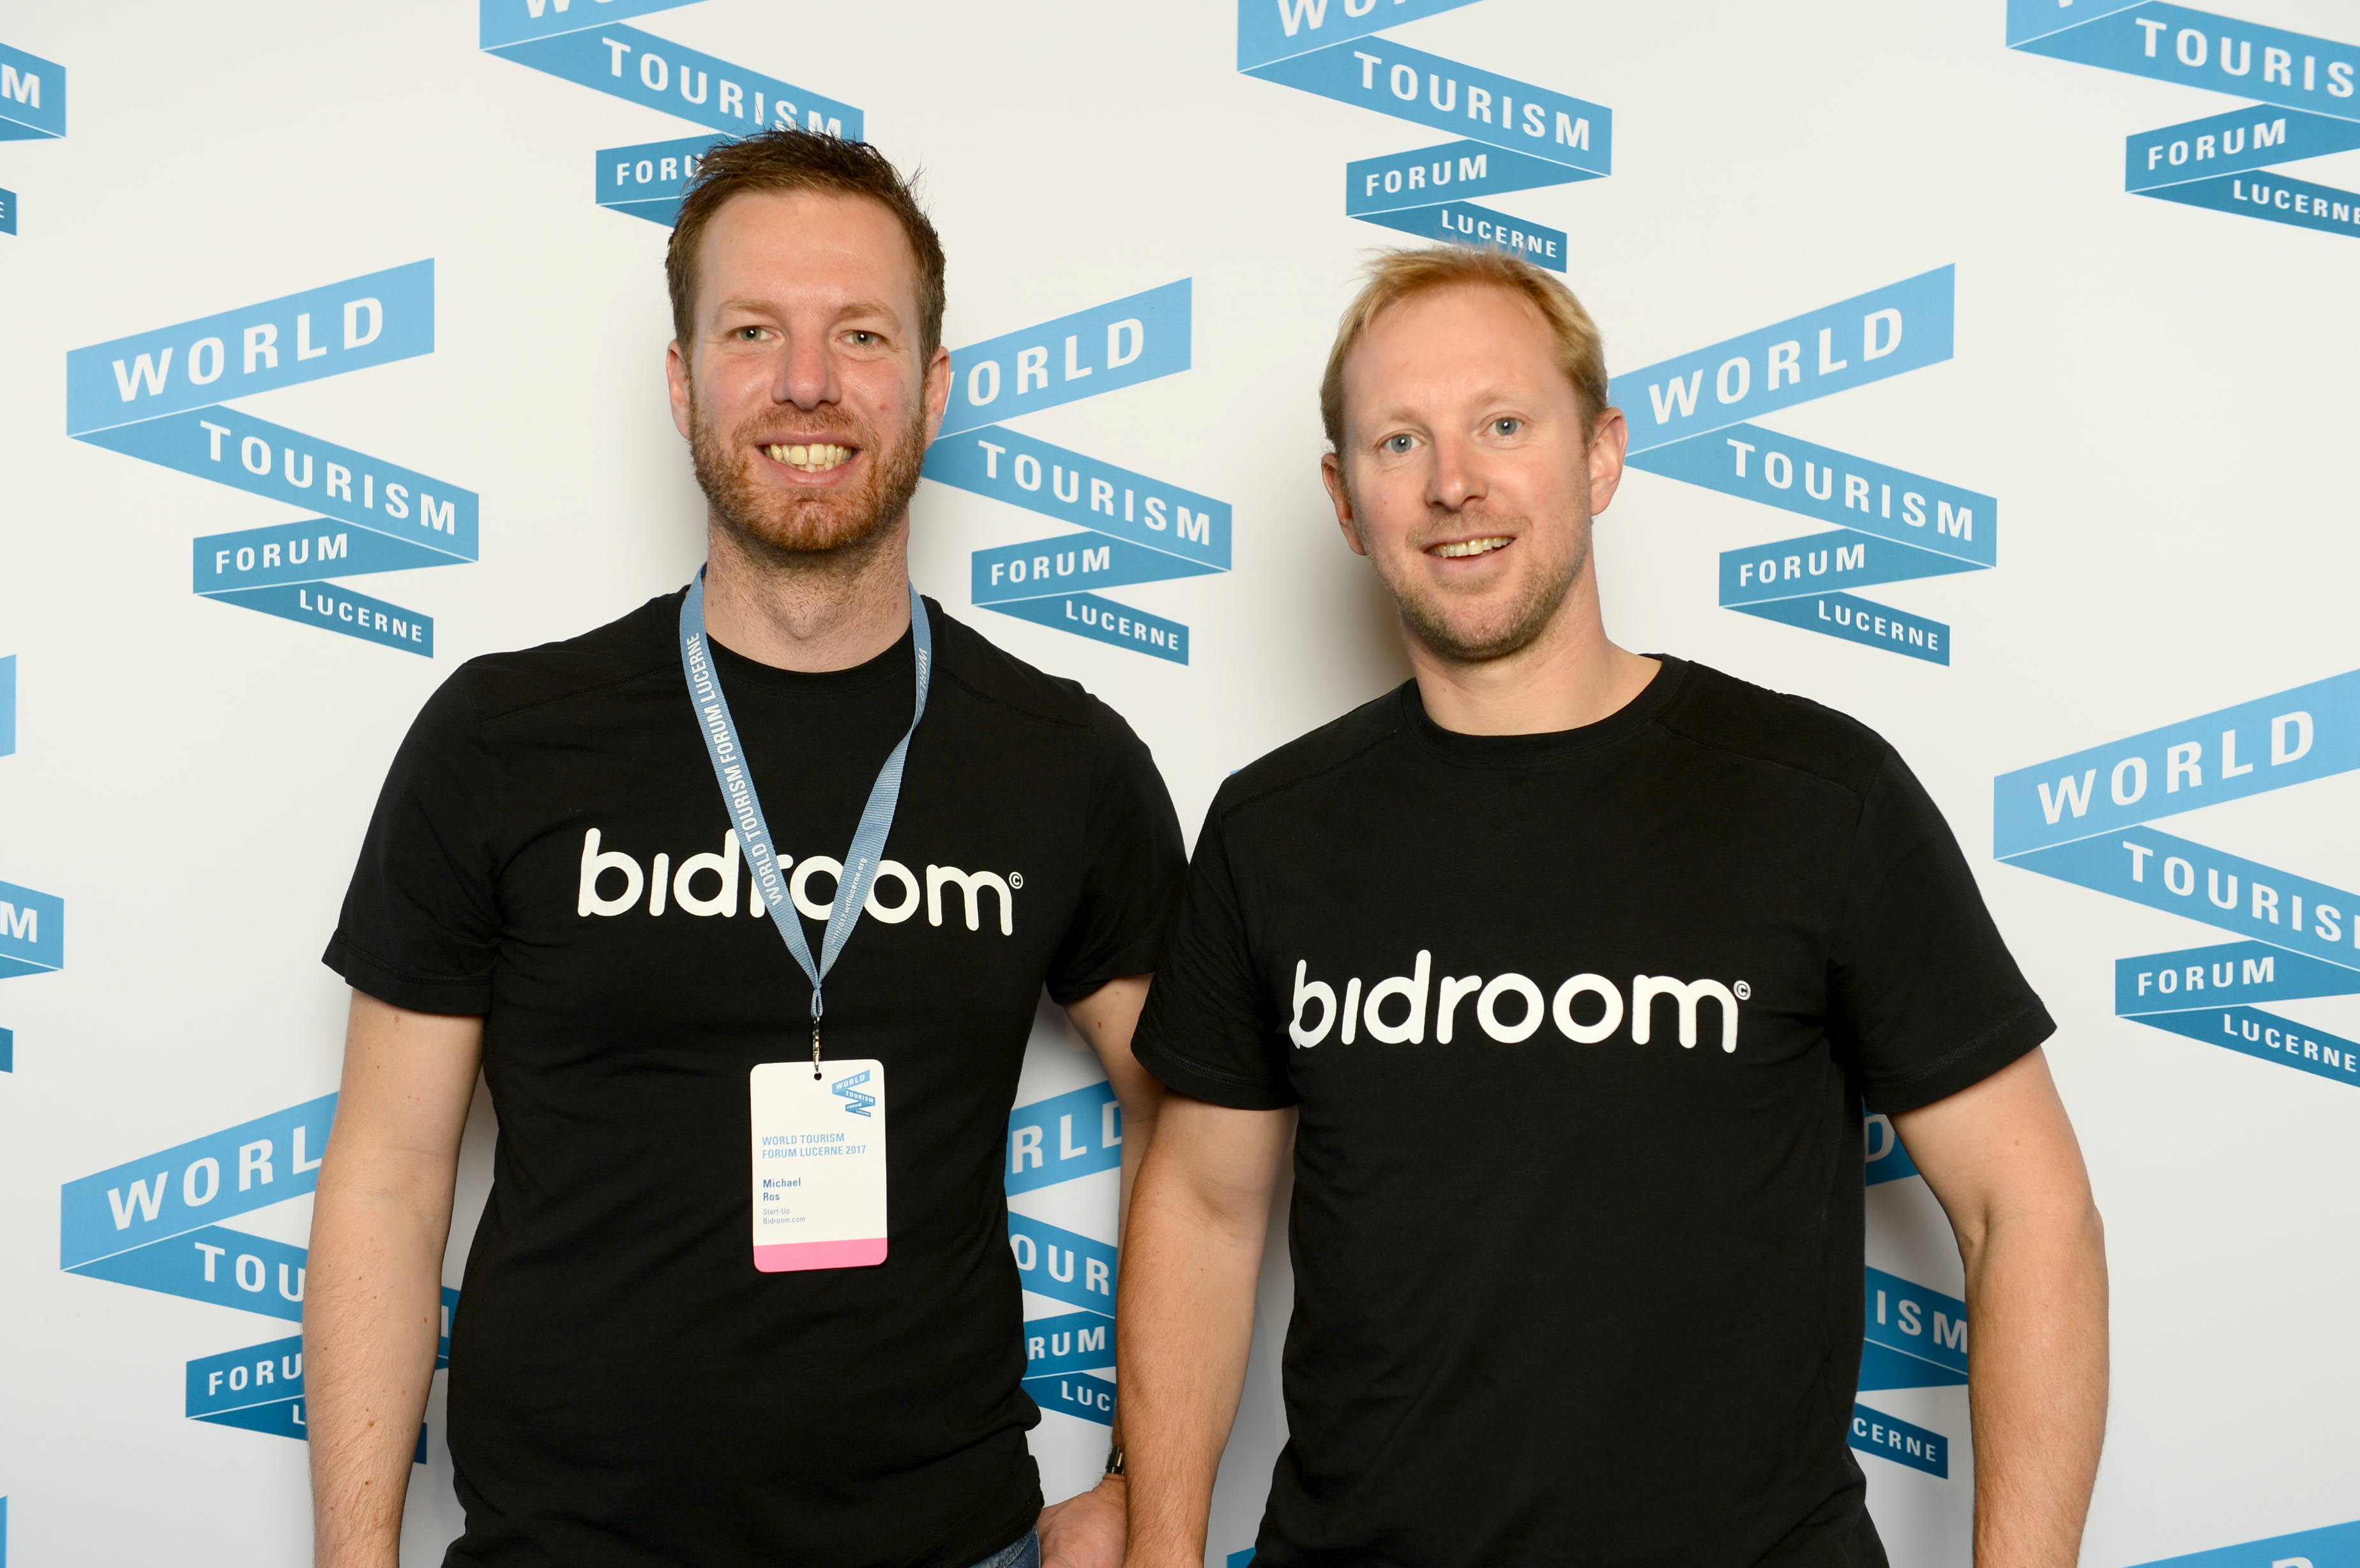 Michael Ros and Casper Knieriem, the co-founders of Bidroom.com